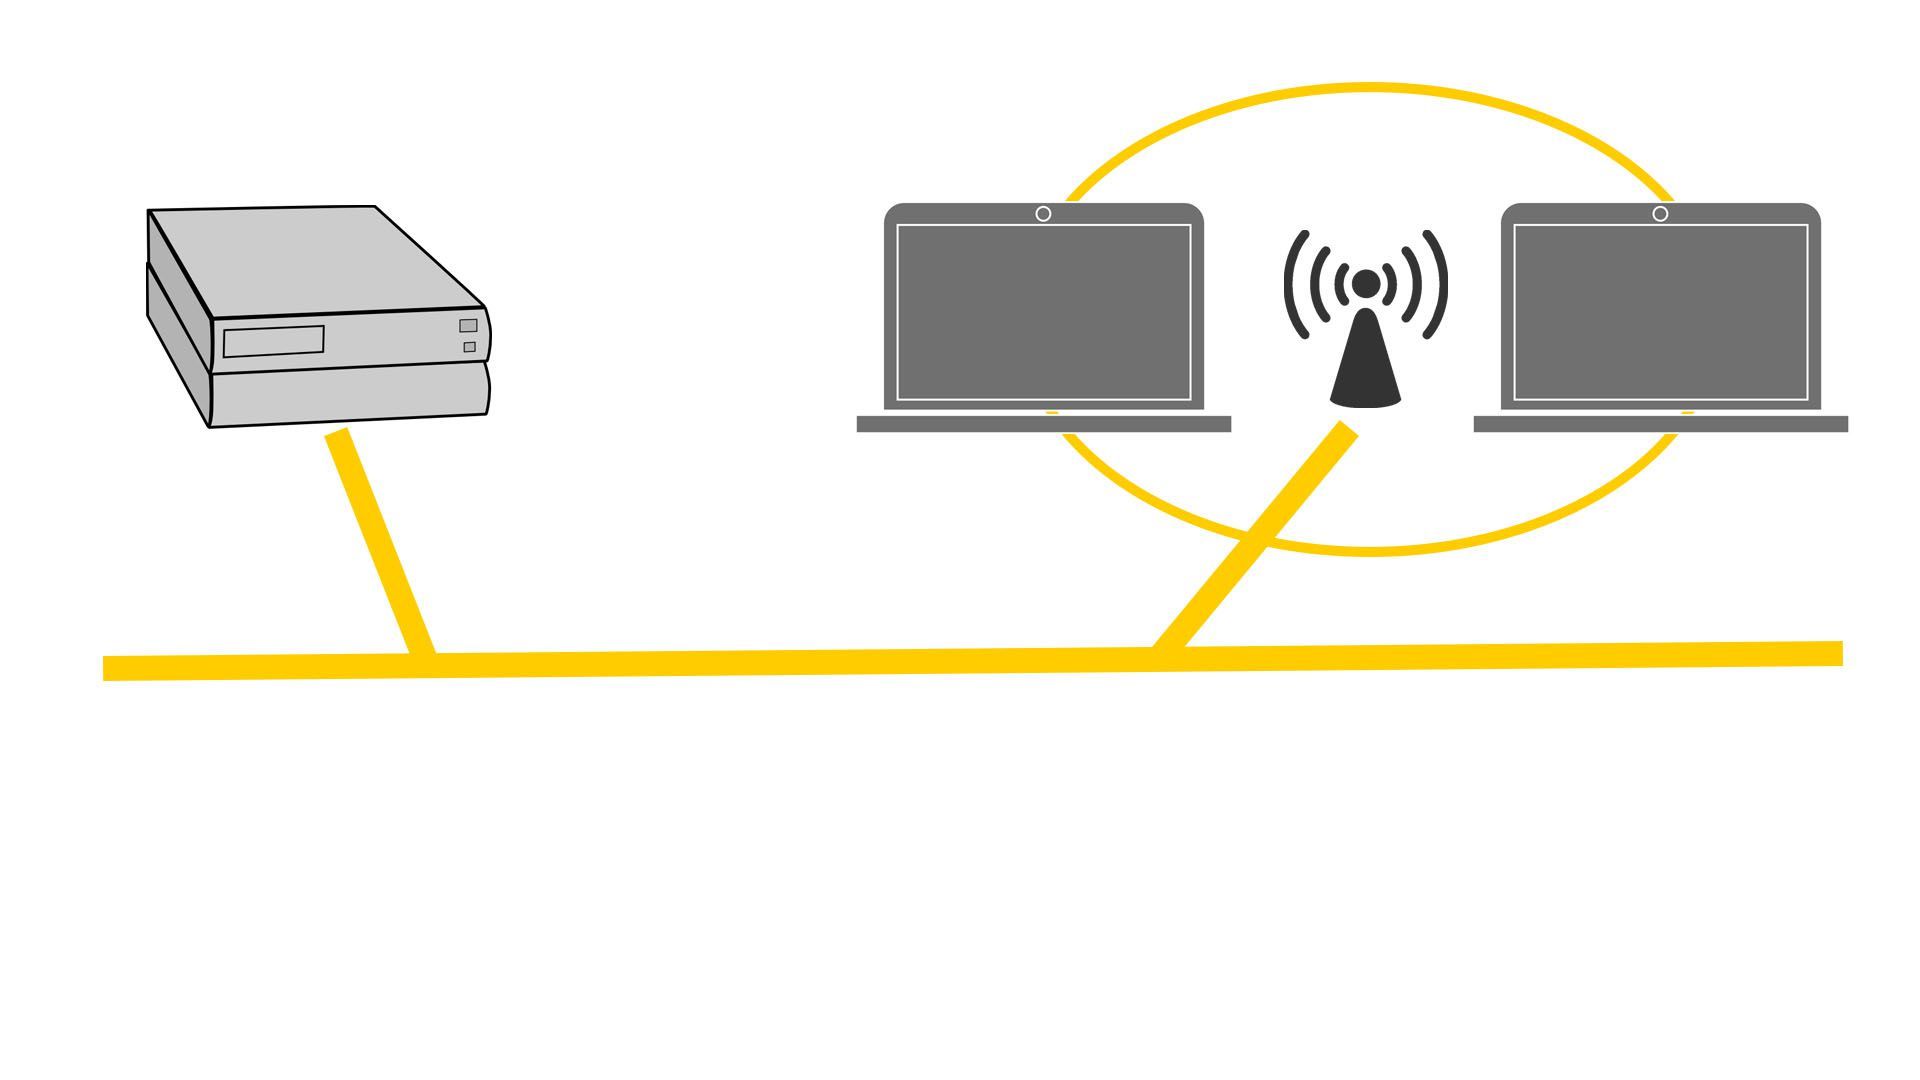 Иллюстрация беспроводной топологии, показывающая сервер, 2 ноутбука и WAP.